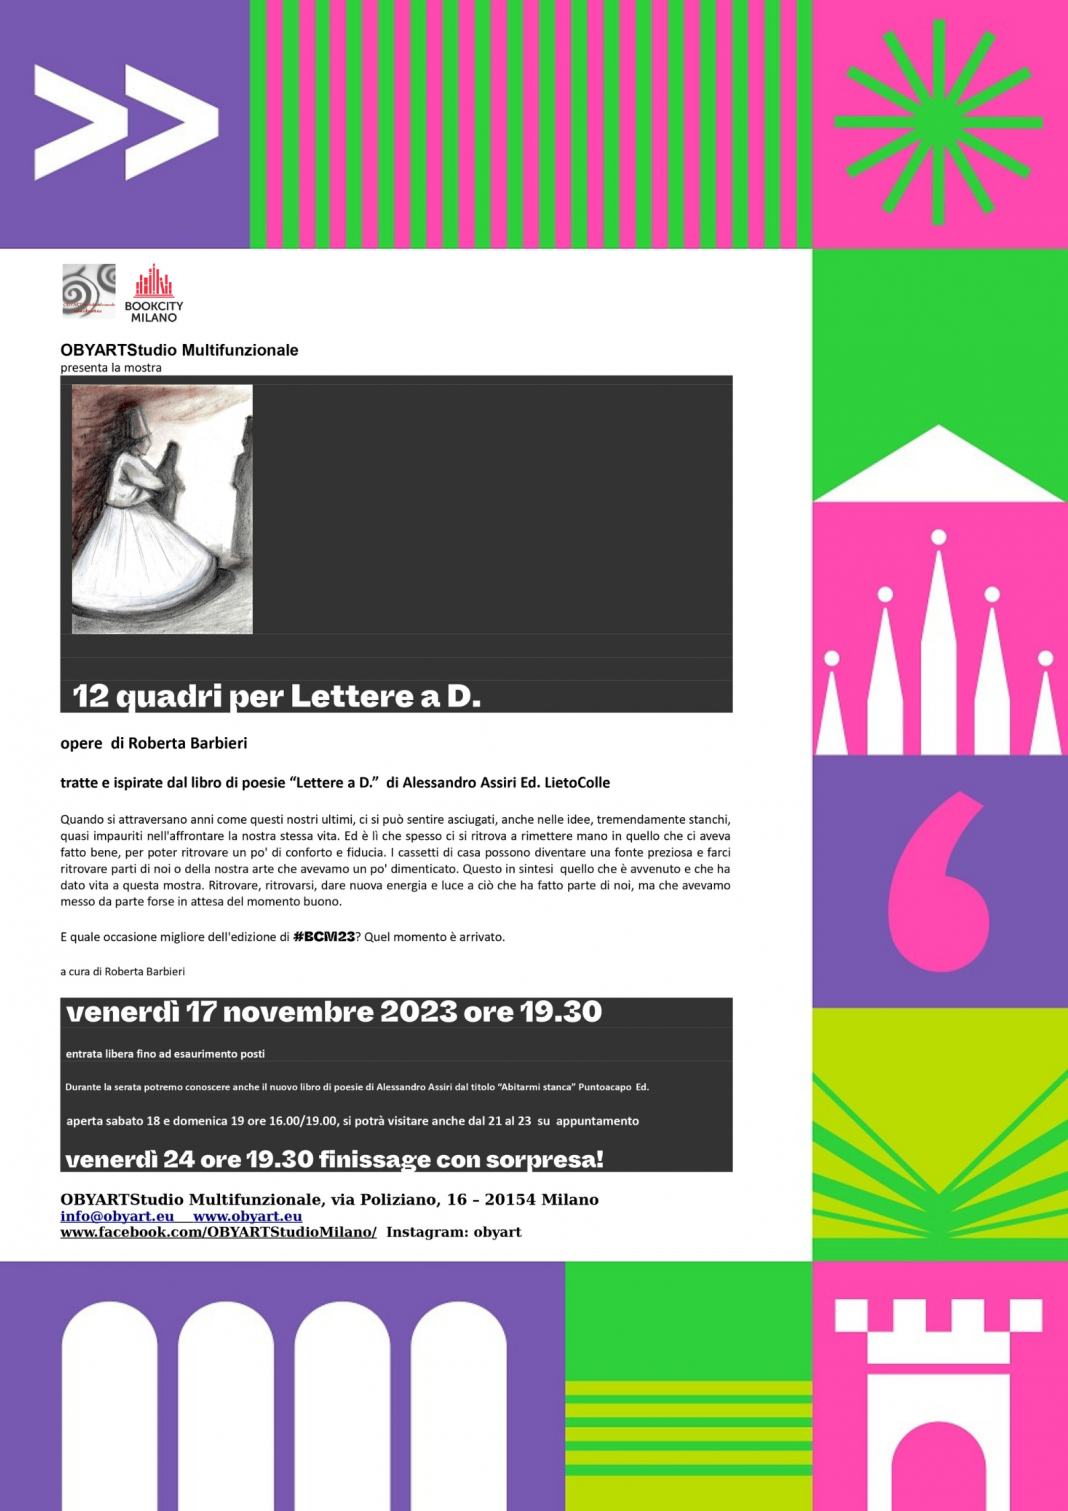 Roberta Barbieri / Alessandro Assiri – 12 quadri per Lettere a D.https://www.exibart.com/repository/media/formidable/11/img/45c/locandina-12-quadri-per-Lettere-a-D.-1068x1511.png